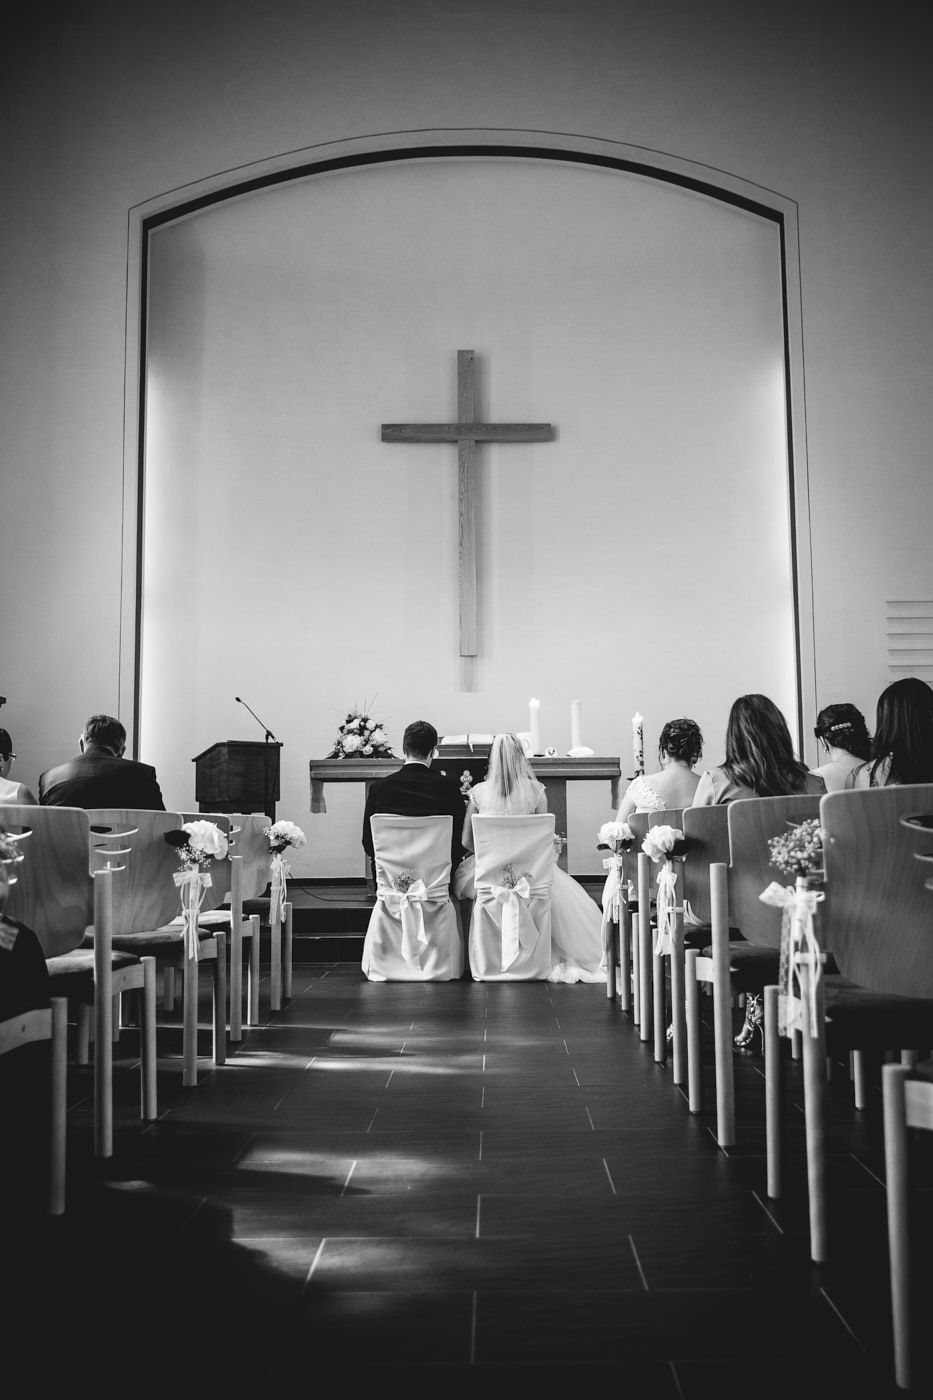 Die Trauung von hinten in schwarz weiß. Hochzeitsfotograf in Bad Ems.